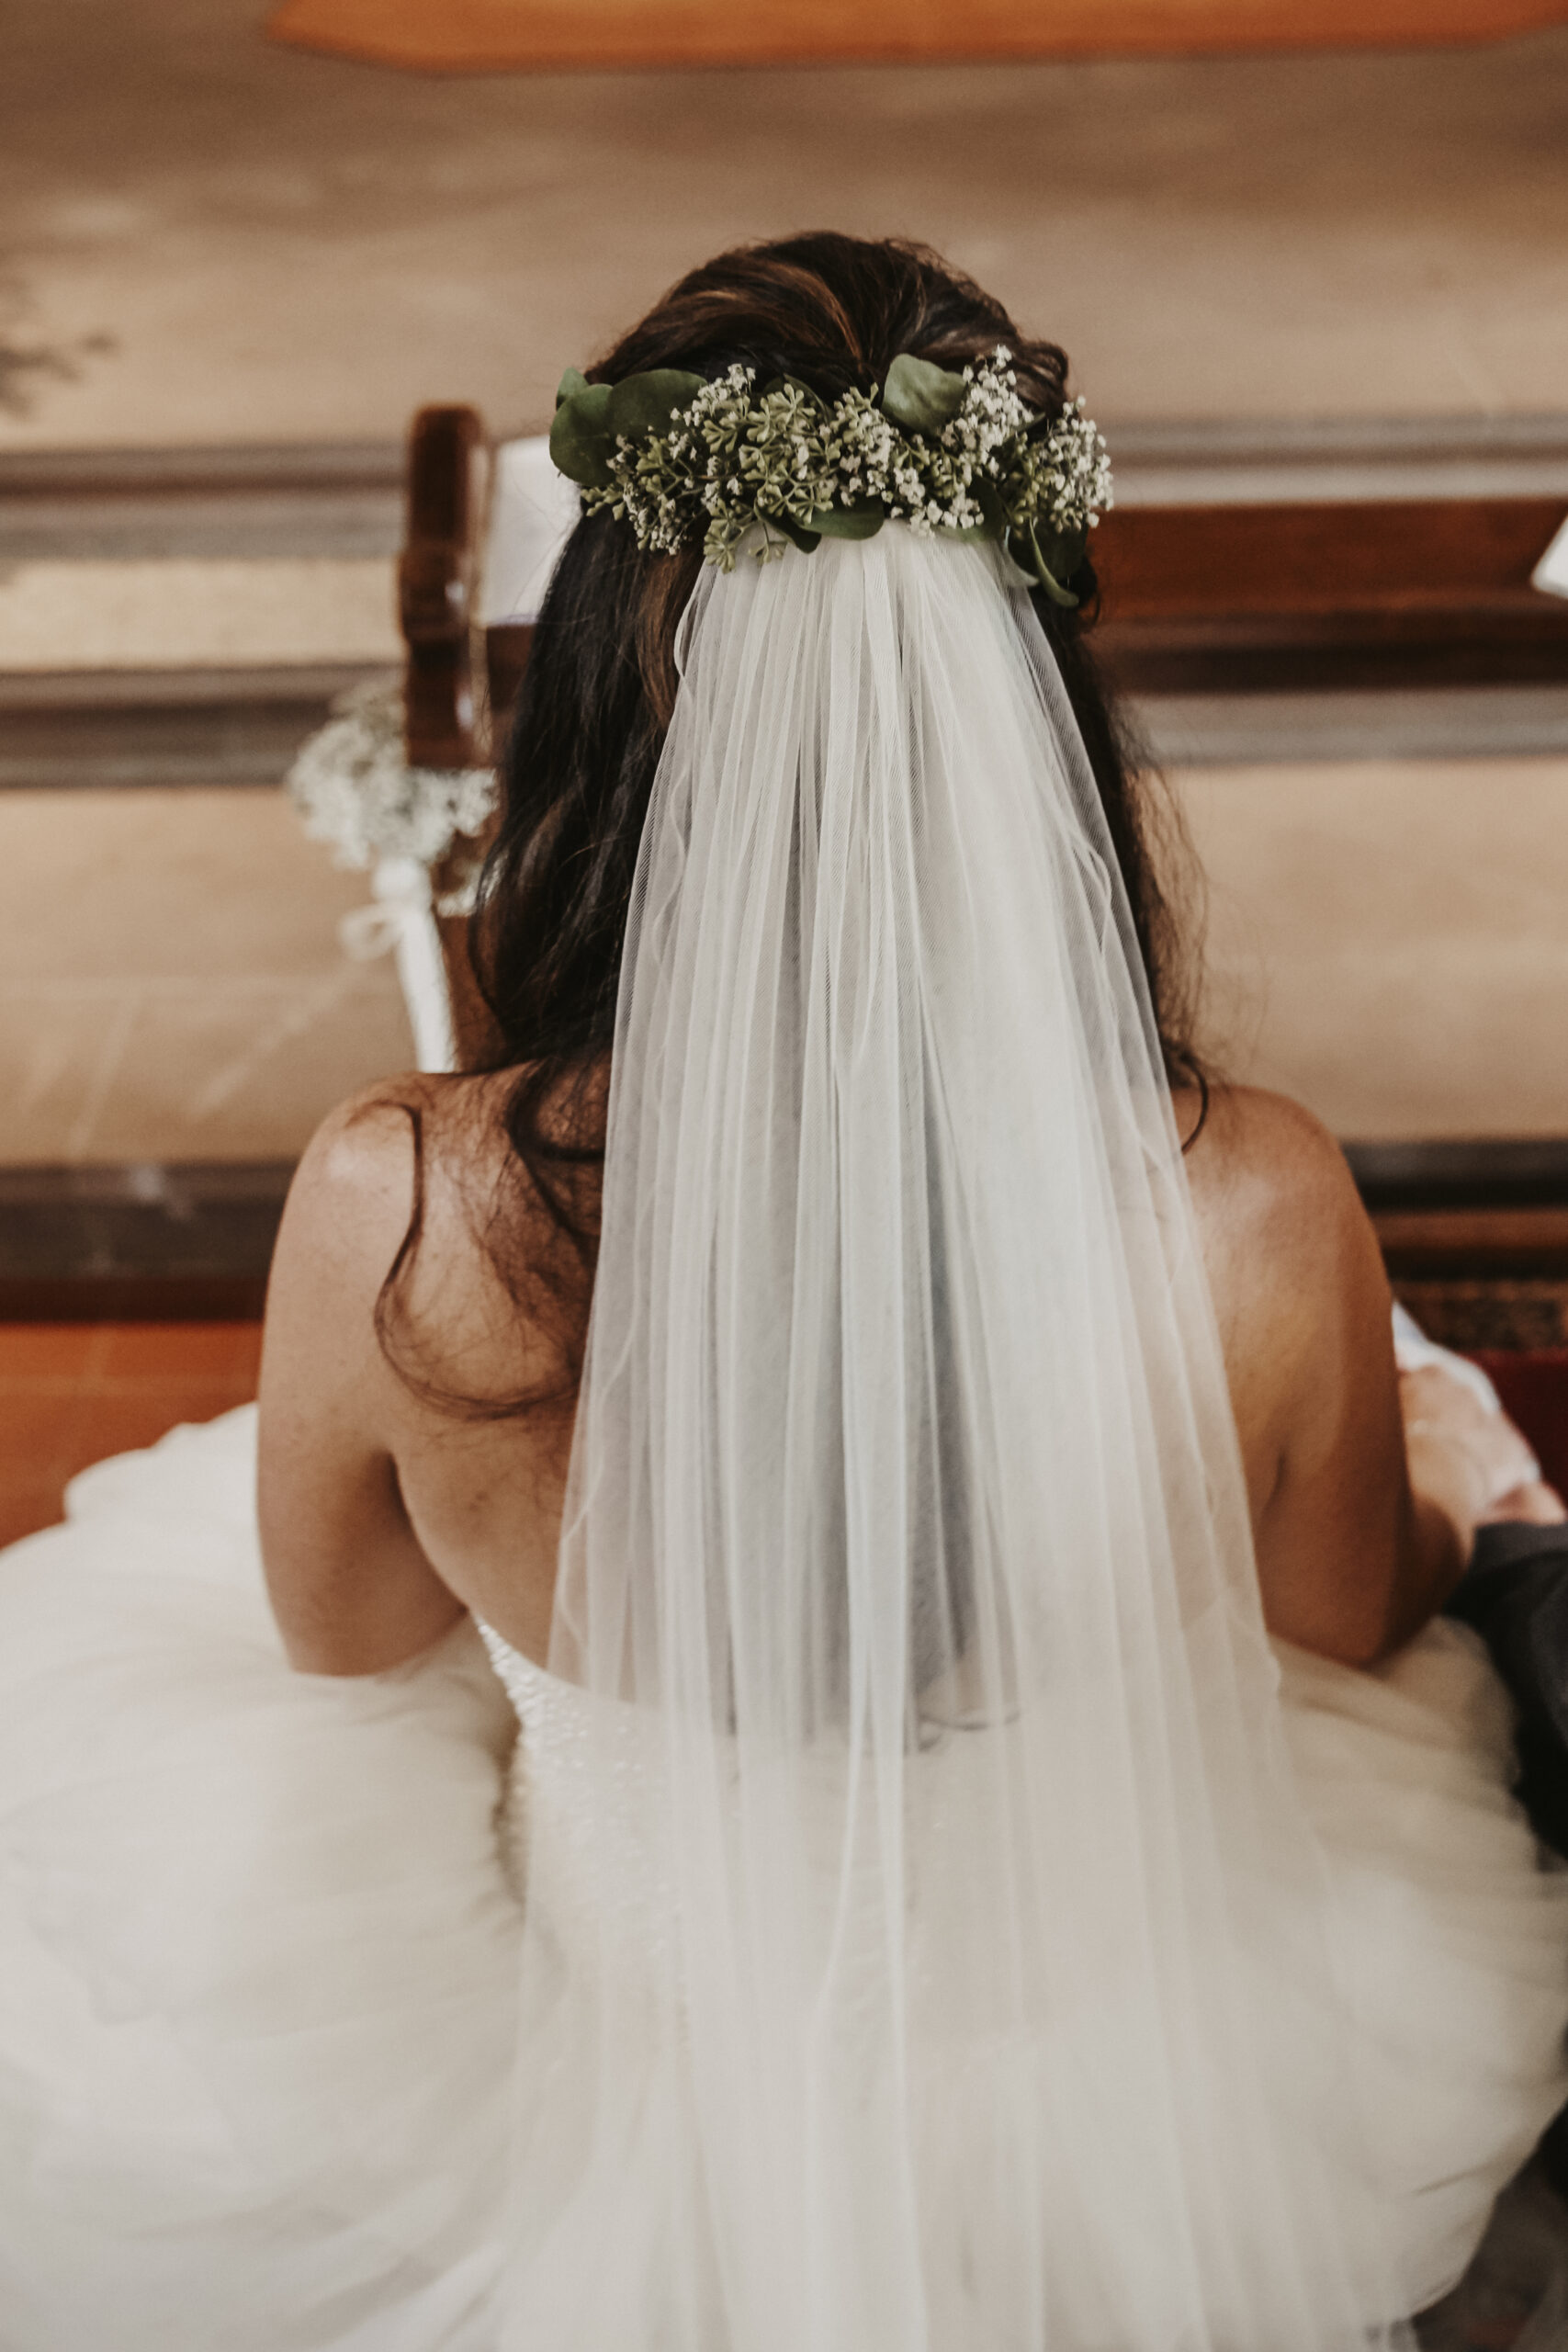 Braut von hinten oben mit großem Brautkleid und Schleier und der Schleier ist in den offenen Haaren mit Blumen festgesteckt als Hochzeitsfrisur.